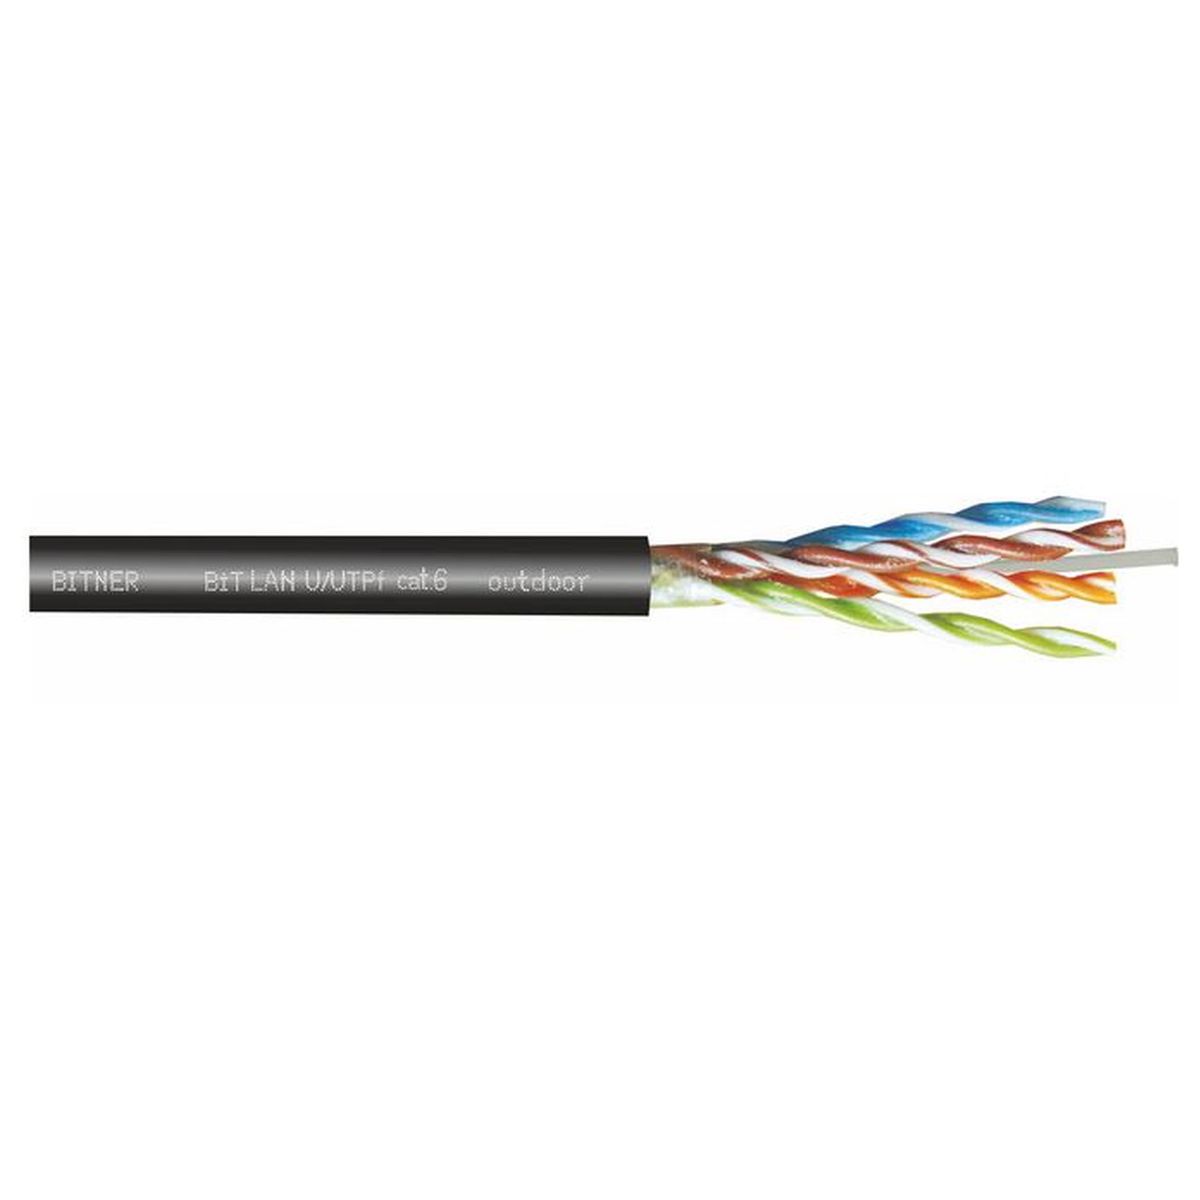 Kabel zewnętrzny żelowany BiTLAN U/UTPf cat.6 outdoor 350MHz